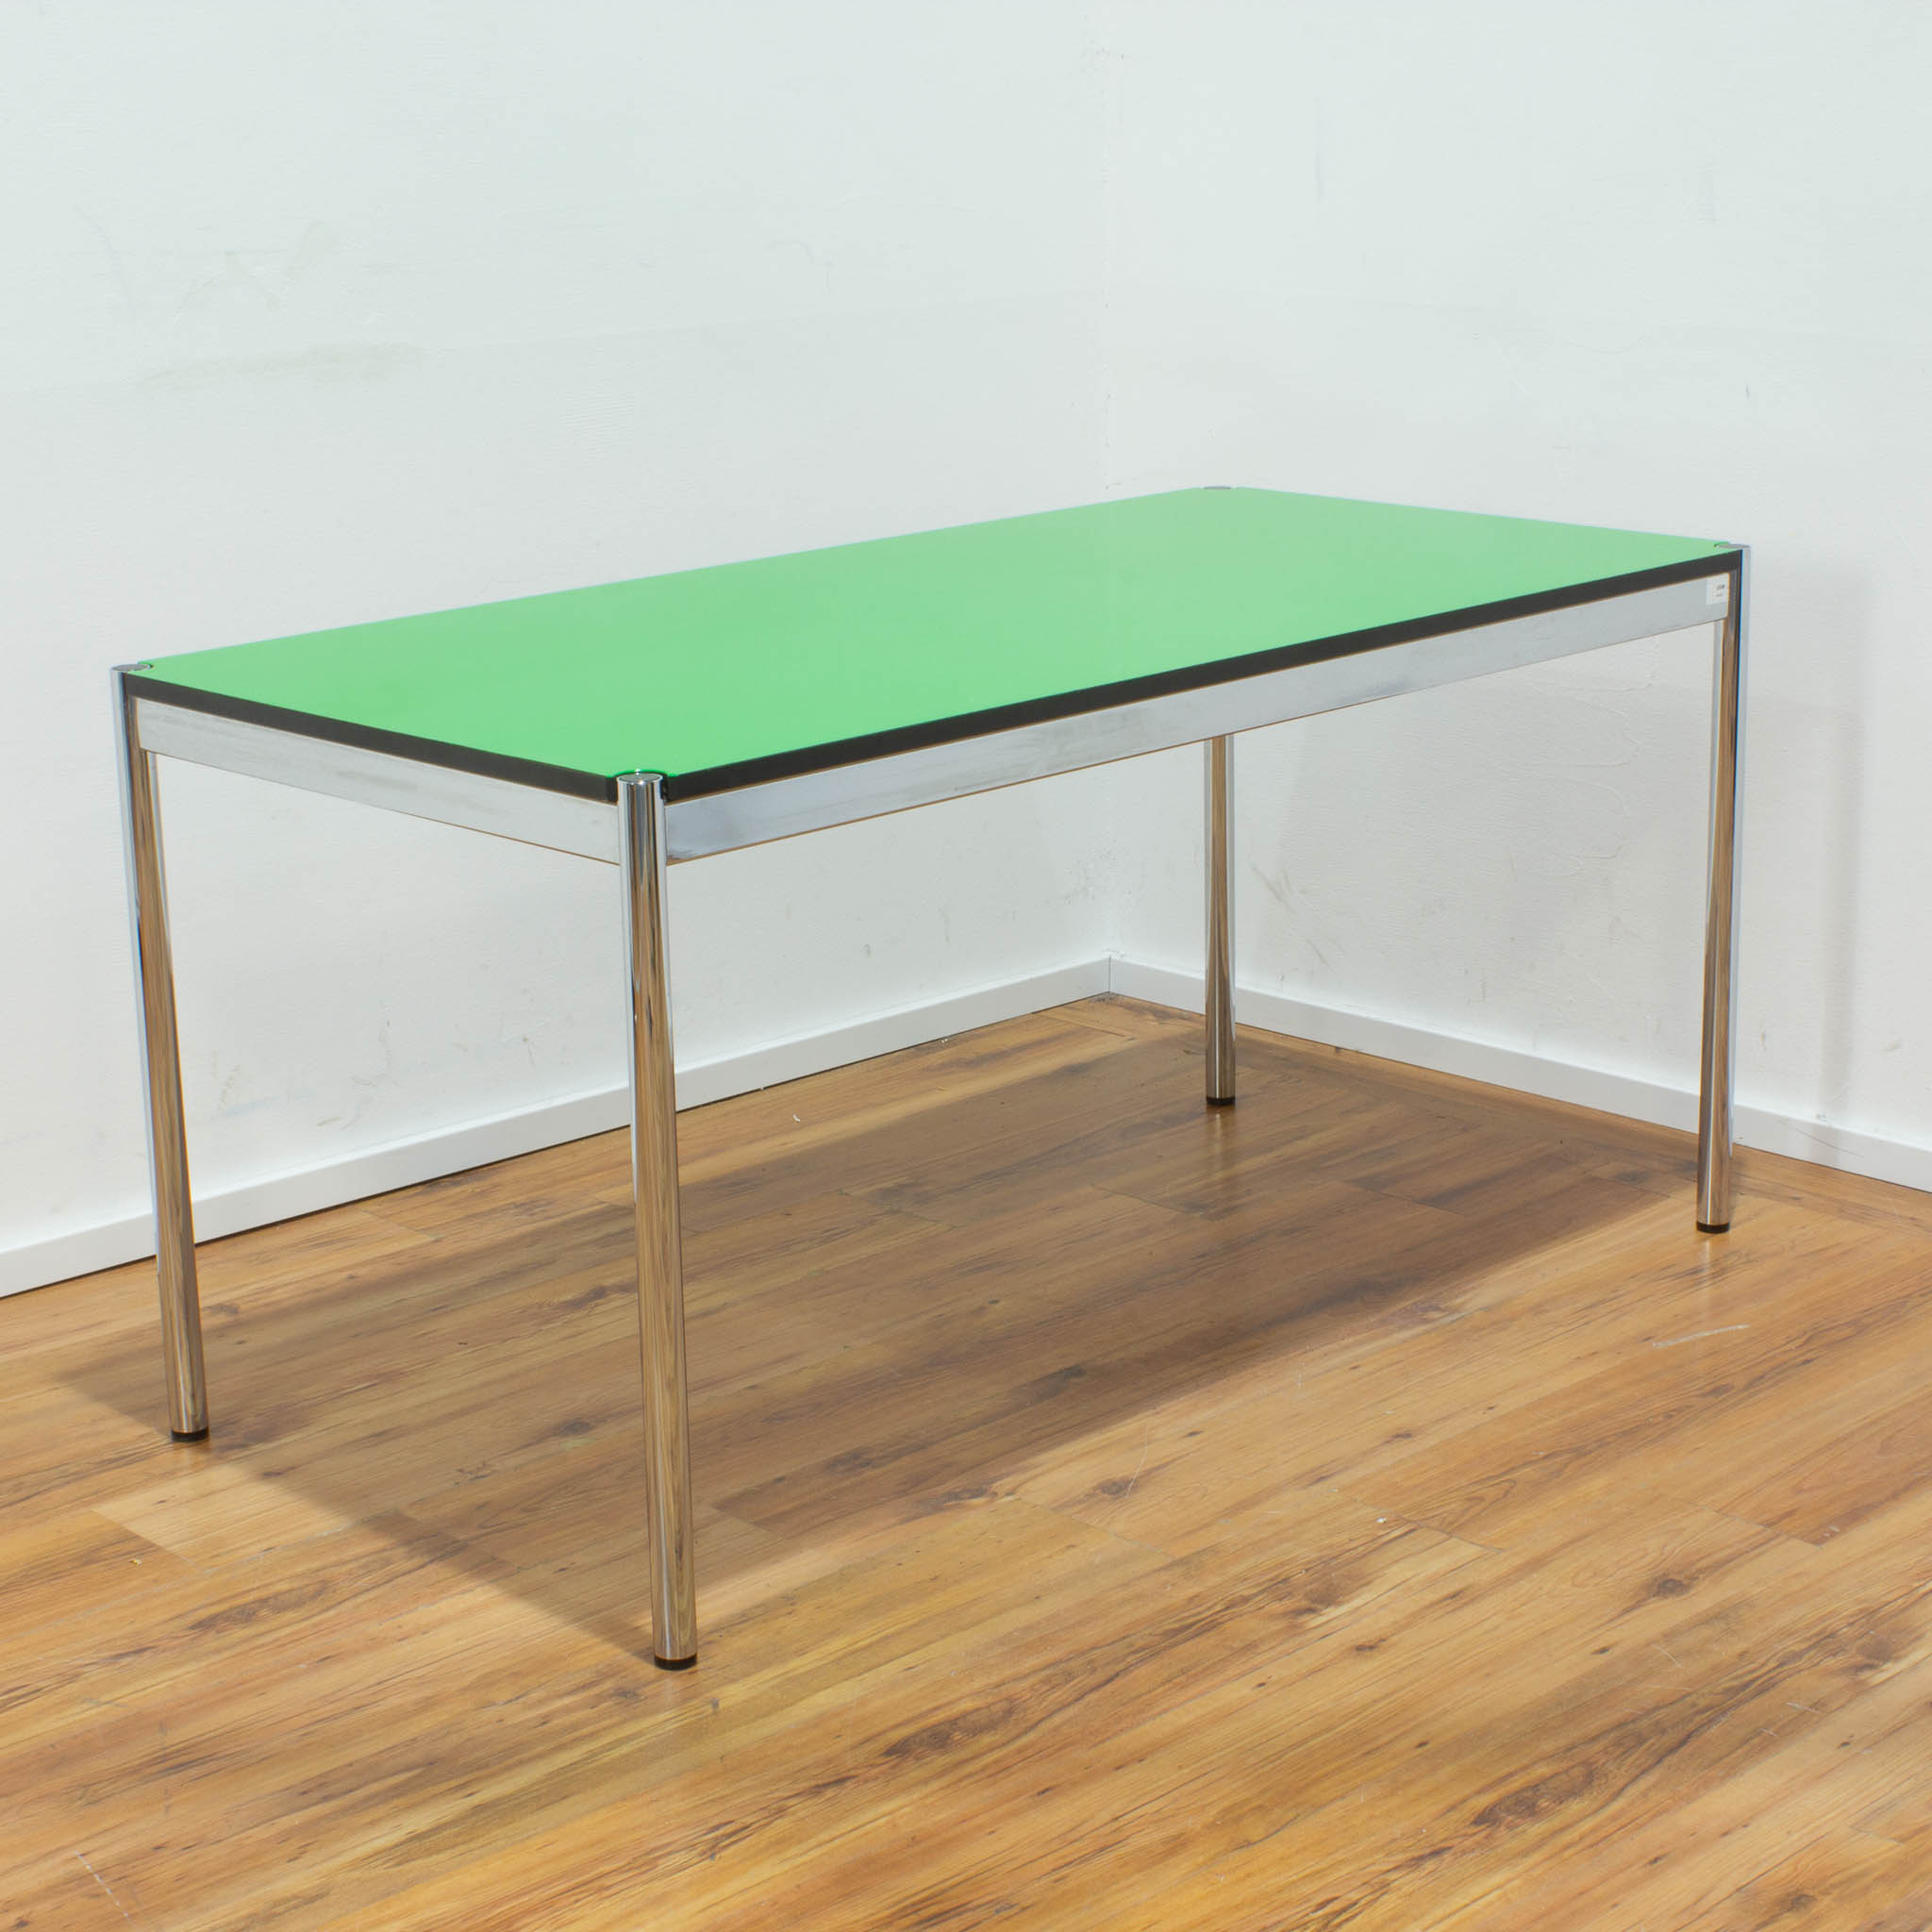 USM Haller Schreibtisch - Tischplatte grün mit schwarzer Umleimung - gebraucht - 150 x 75 cm